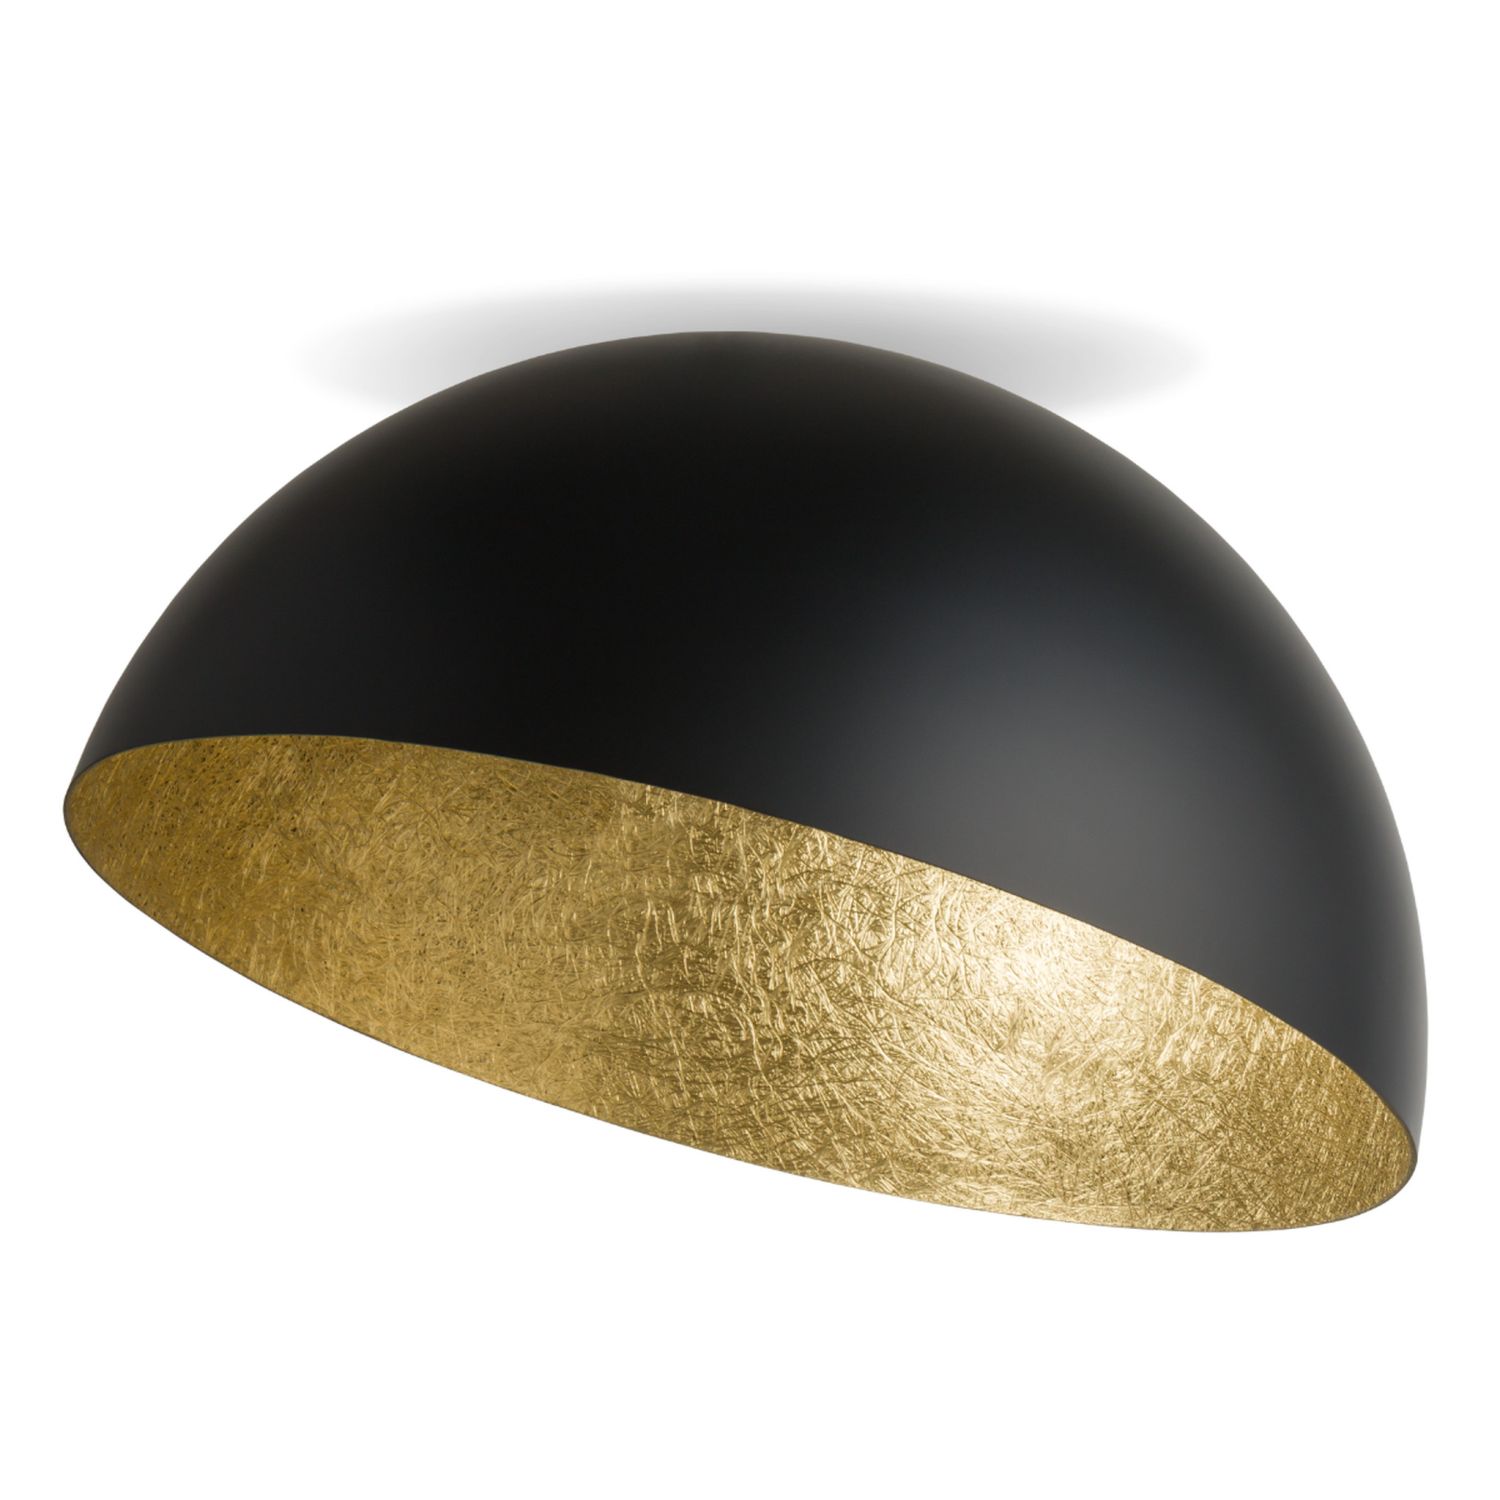 Große Deckenlampe Gold Schwarz rund Ø90 cm E27 Loft